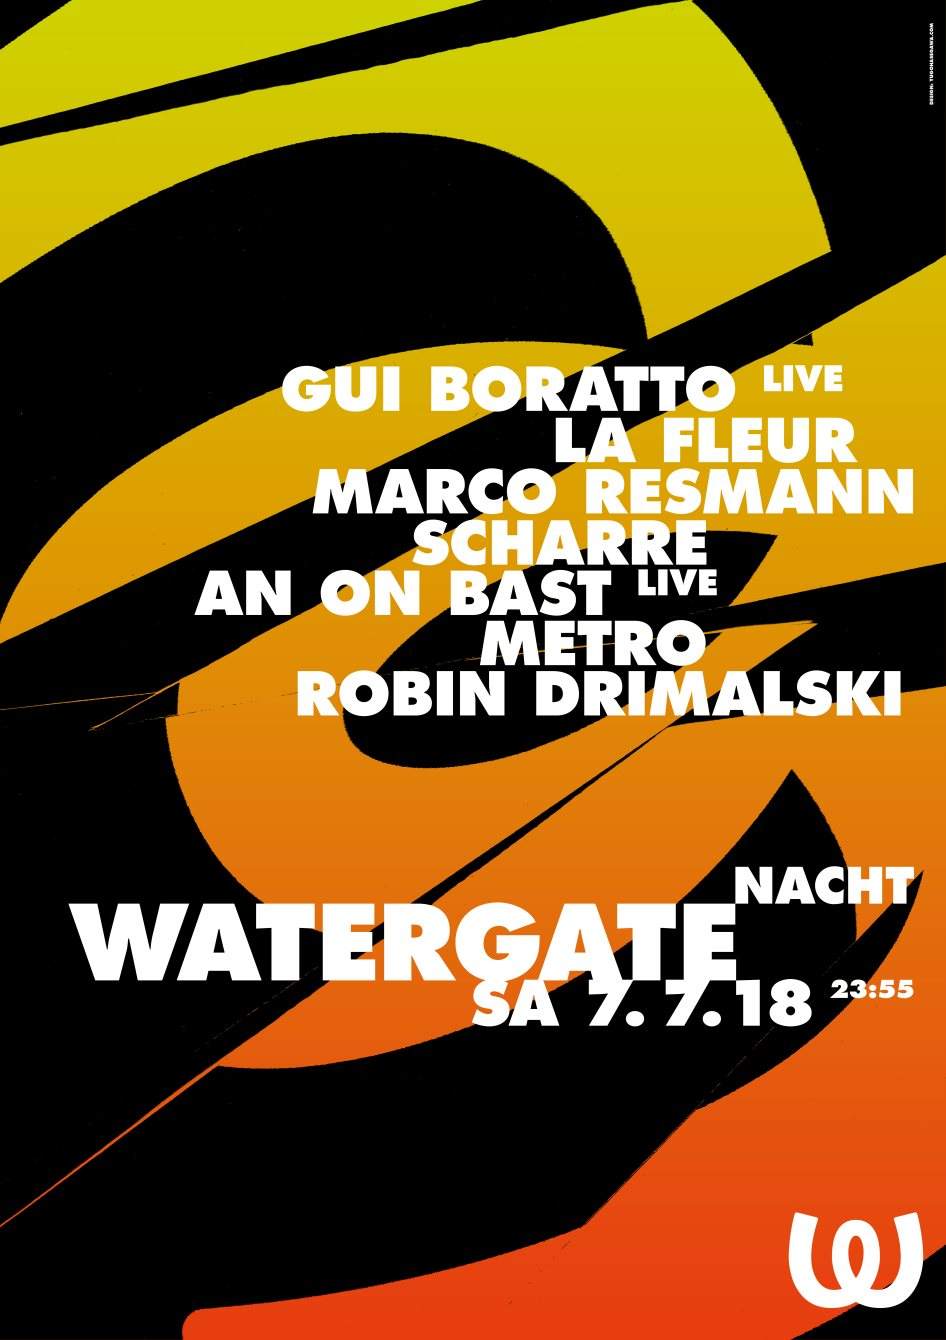 Watergate Nacht - フライヤー表